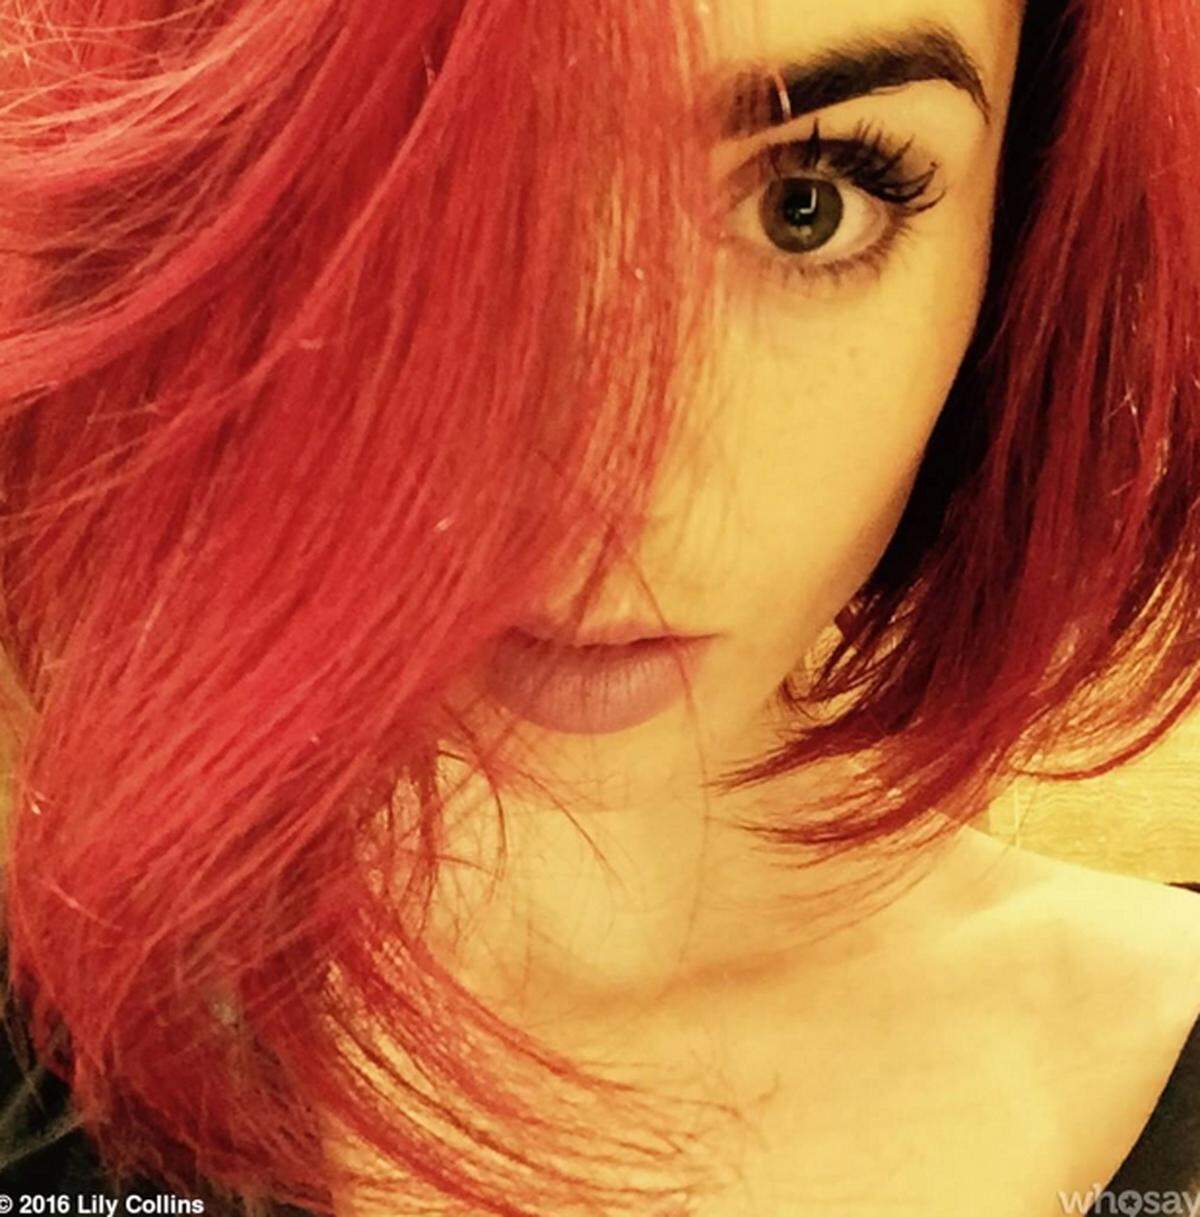 Dazwischen setzte sie auf flammend rotes Haar.  